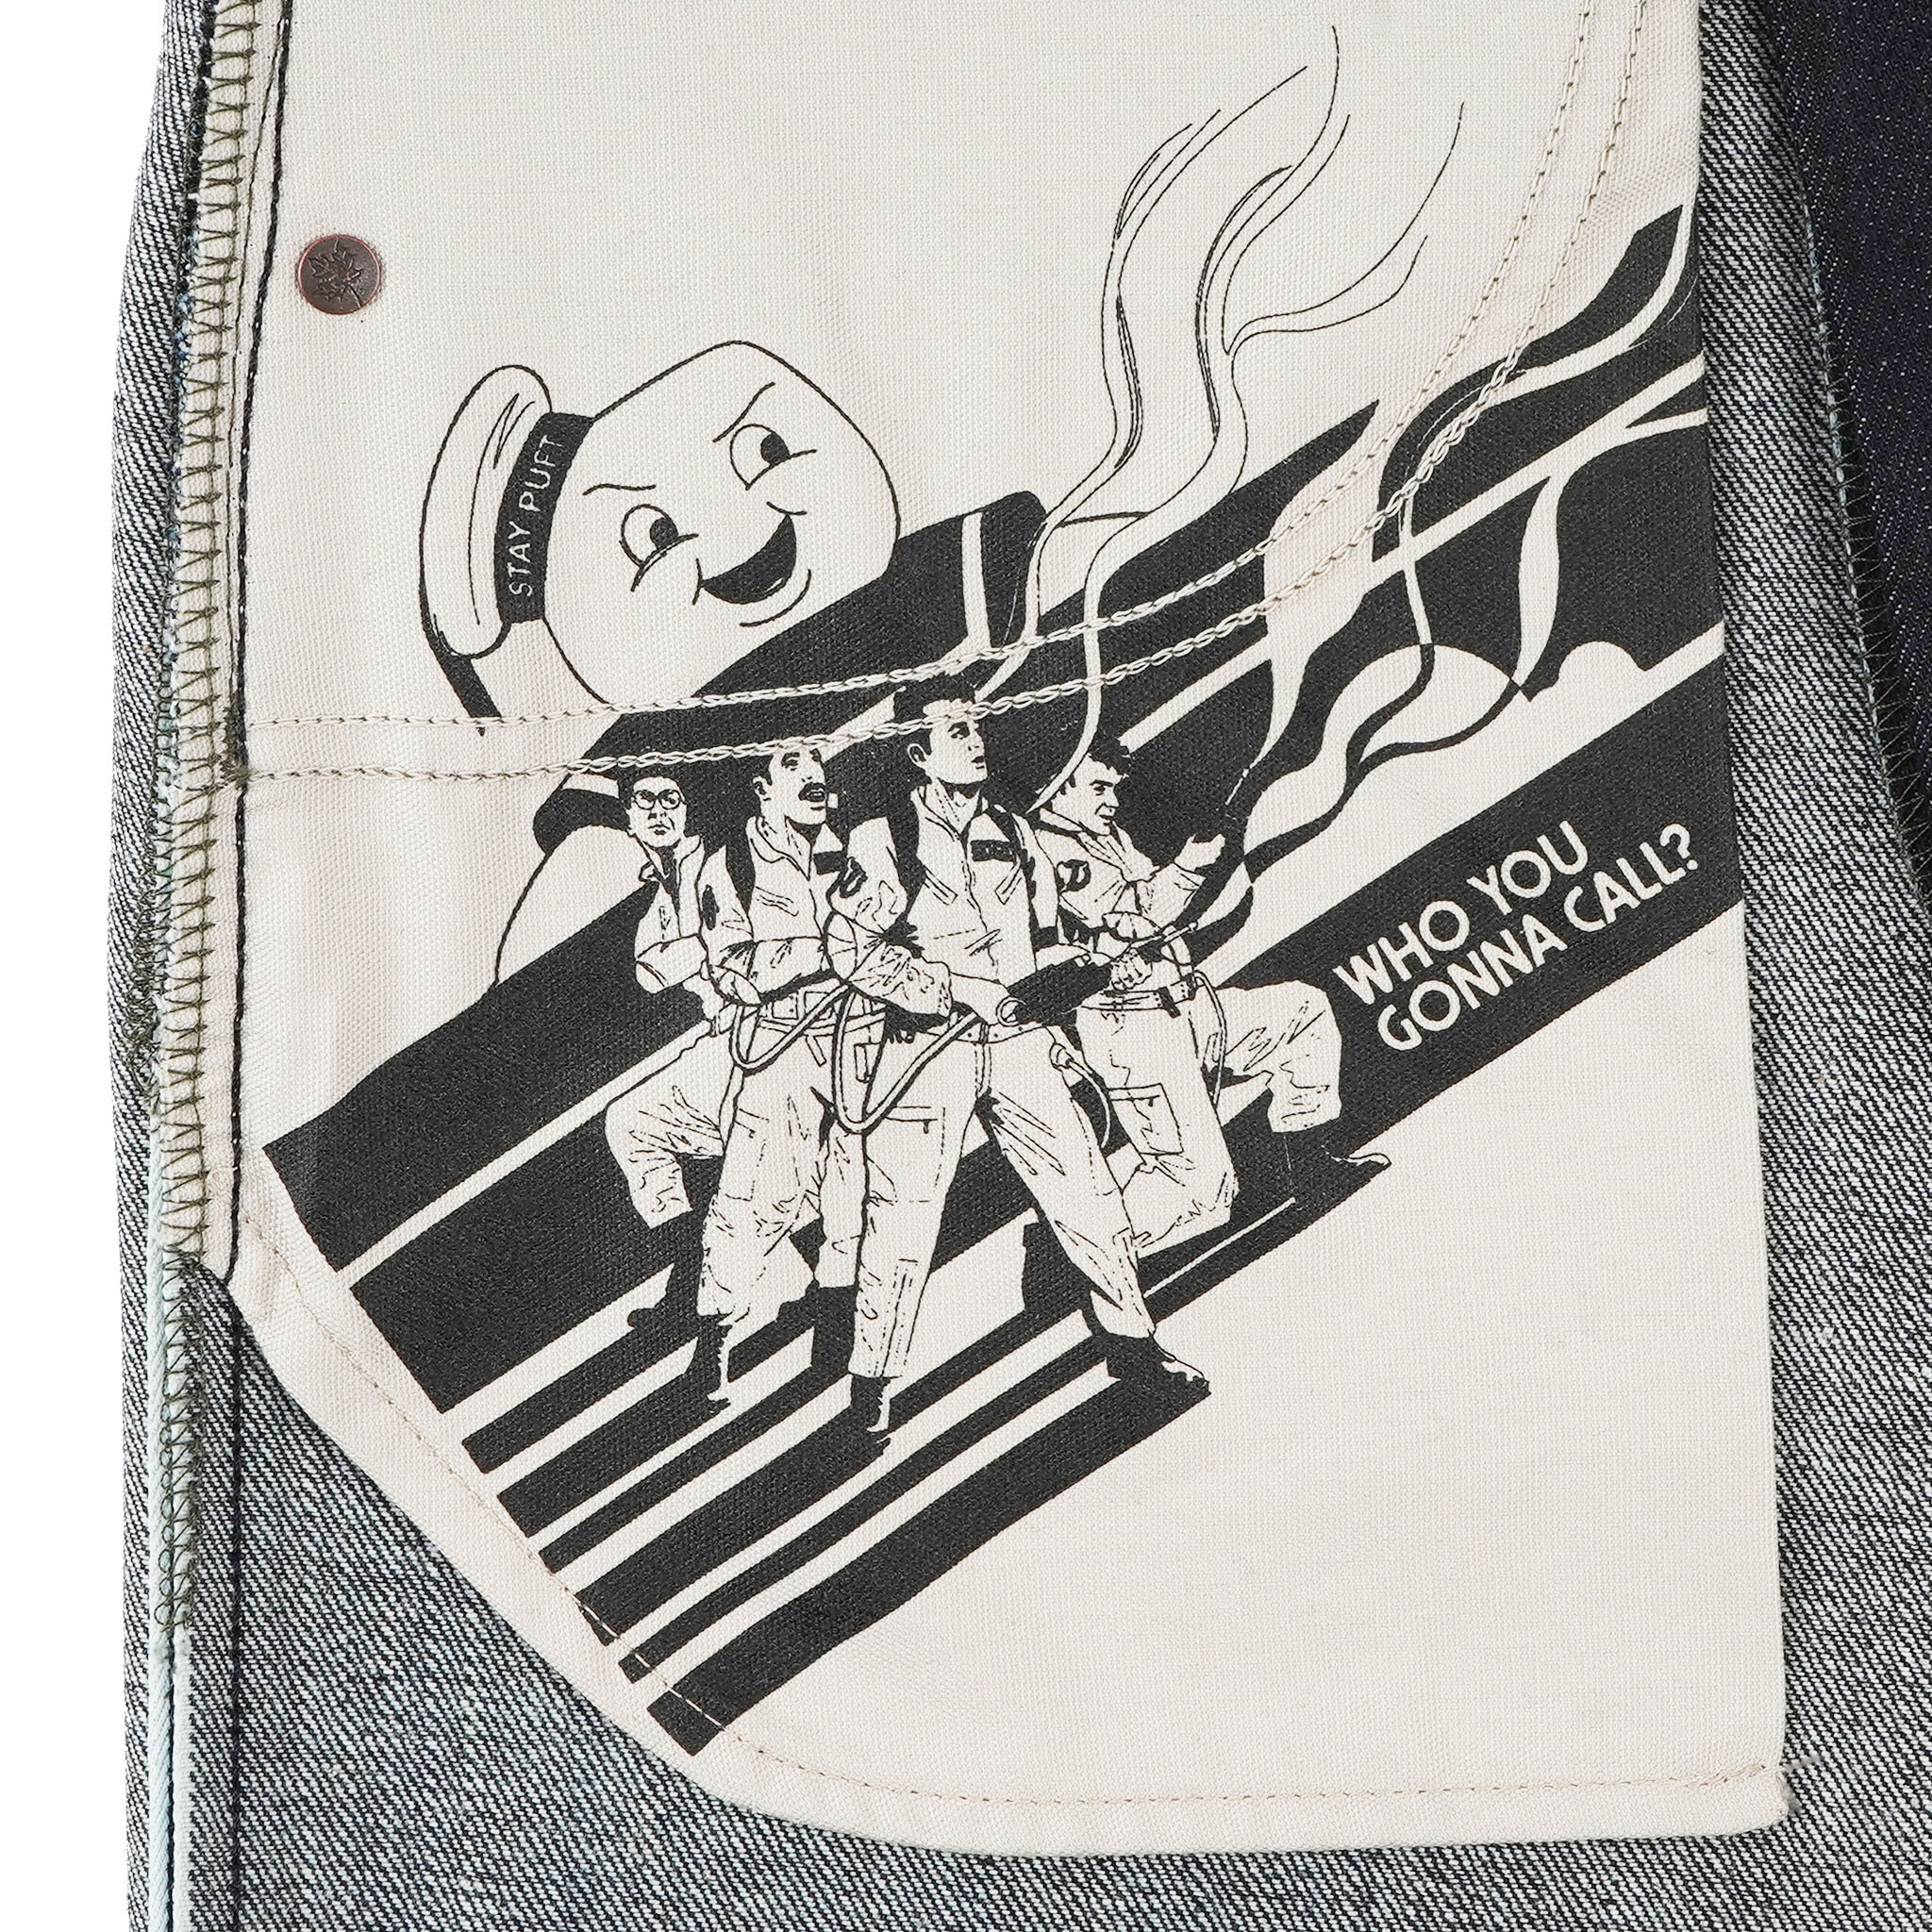  Ghostbusters Supernatural Selvedge jeans - pocket bag 